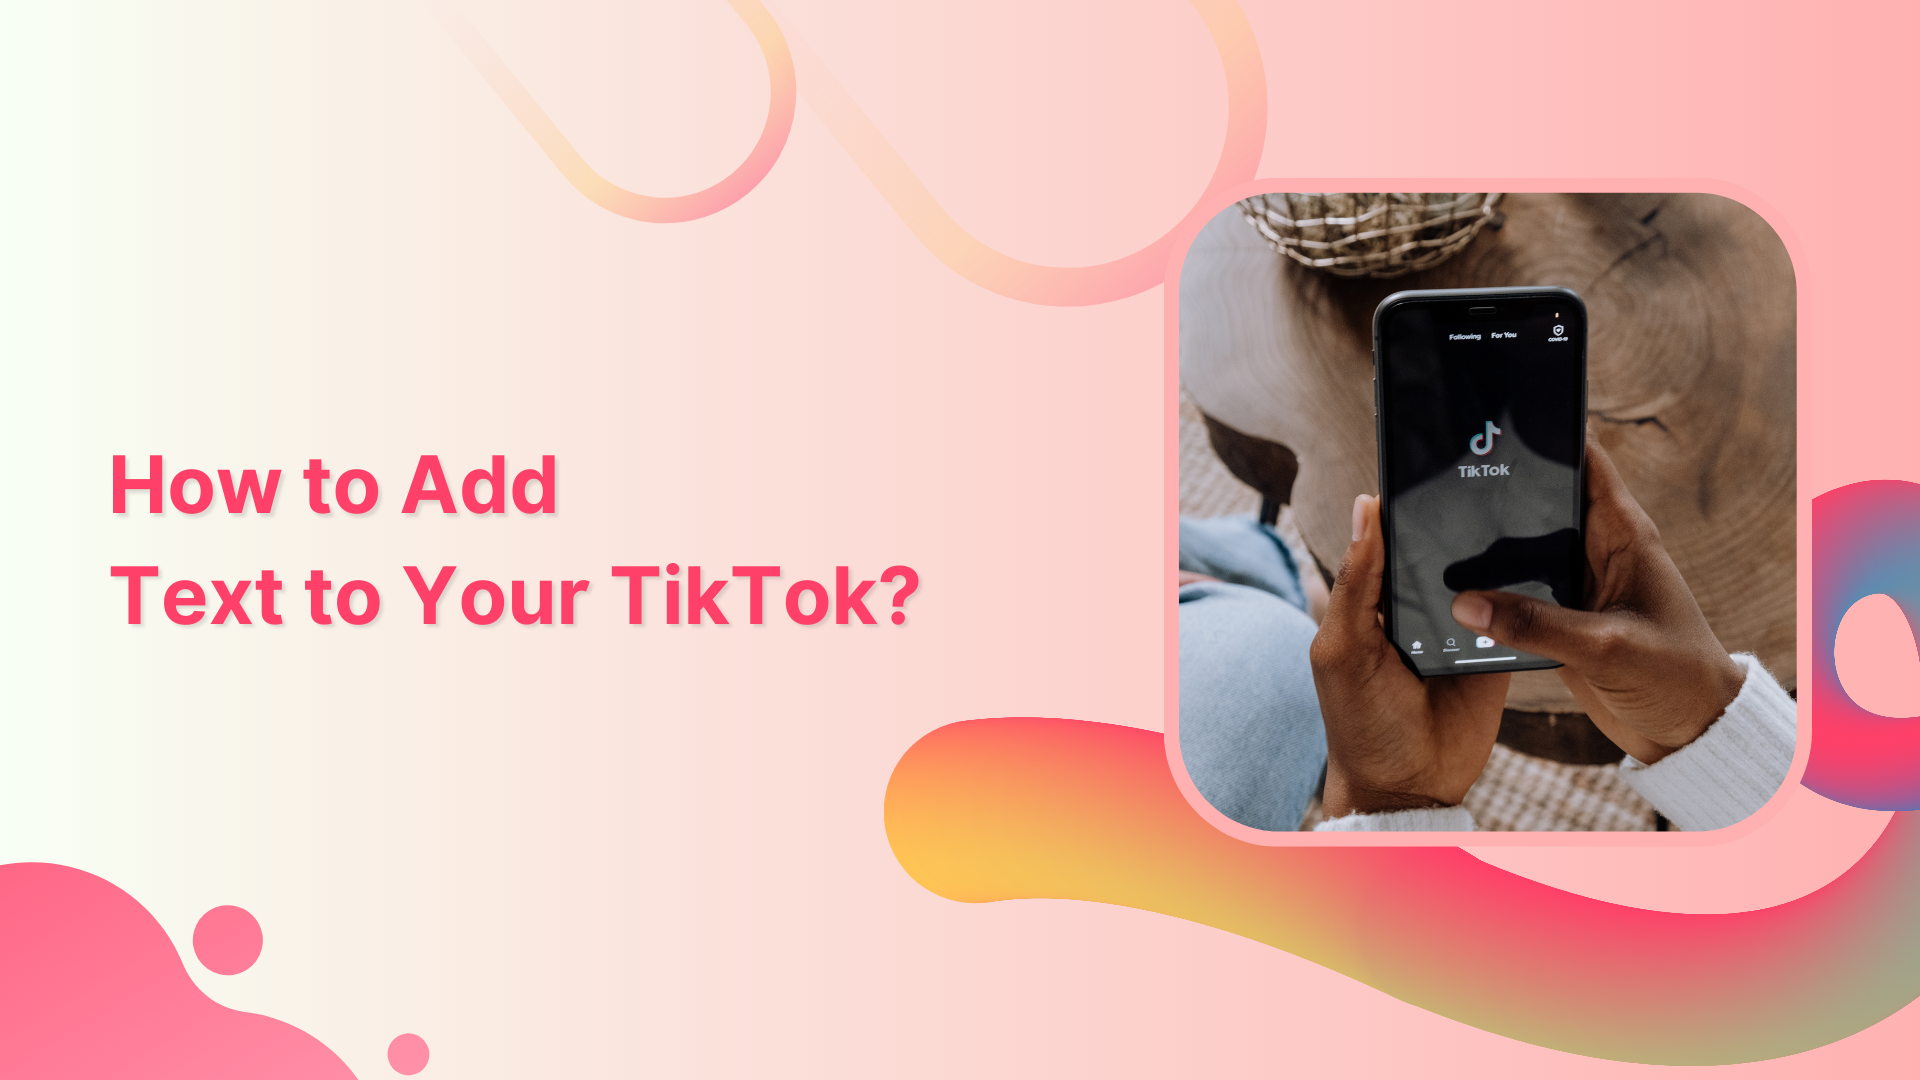 Add text to your TikTok